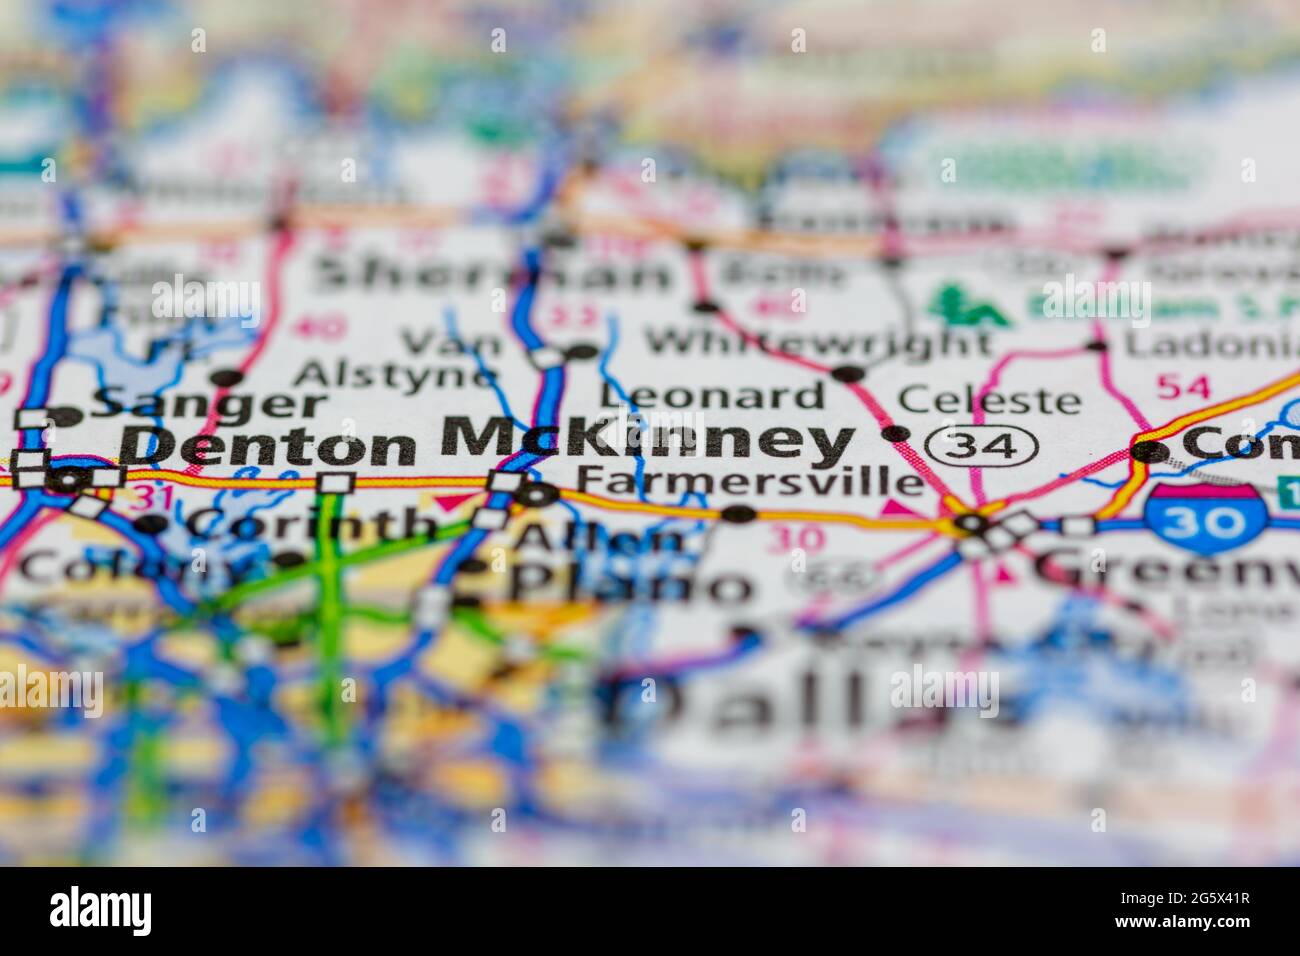 McKinney Texas USA indiqué sur une carte de géographie ou une carte routière Banque D'Images